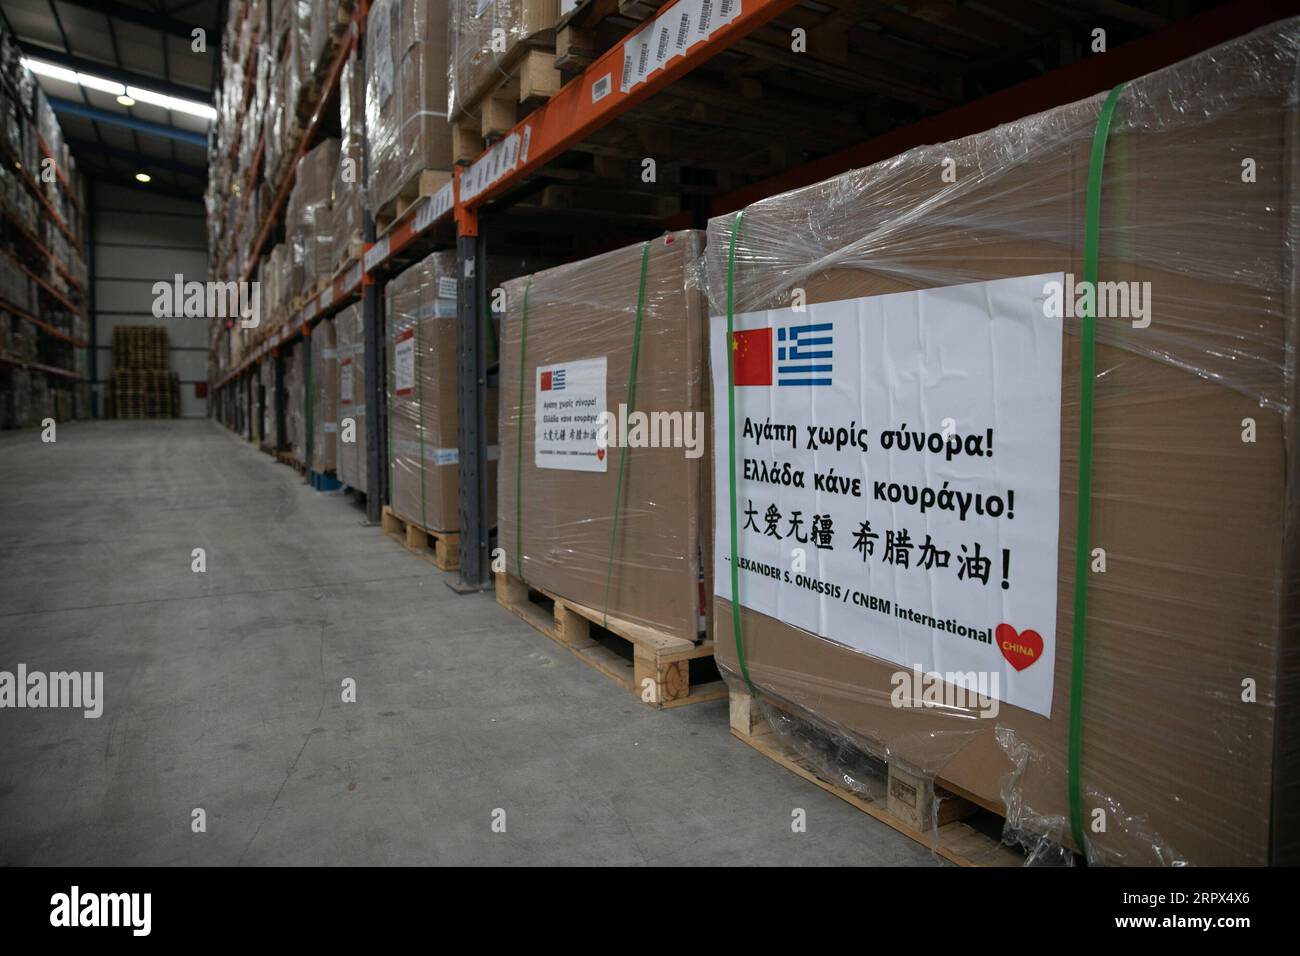 200507 -- OINOI GRIECHENLAND, 7. Mai 2020 -- Schachteln mit medizinischen Hilfsgütern, die Griechenland aus China gespendet wurden, sind am 7. Mai 2020 im Zolllager von Oinoi, 45 km nordwestlich von Athen, Griechenland, zu sehen. Griechenland hat bisher Spenden im Wert von mehr als 89 Millionen Euro 96,4 Millionen US-Dollar im Kampf gegen COVID-19 erhalten, teilte der griechische Gesundheitsminister Vassilis Kikilias am Donnerstag mit und bedankte sich bei Ländern, einschließlich China, sowie Organisationen, Unternehmen und Einzelpersonen für die kritische Hilfe. Foto von /Xinhua GREECE-OINOI-COVID-19-SPENDETE MEDIZINISCHE VERSORGUNG LEFTERISxPARTSALIS PUBLICATIO Stockfoto